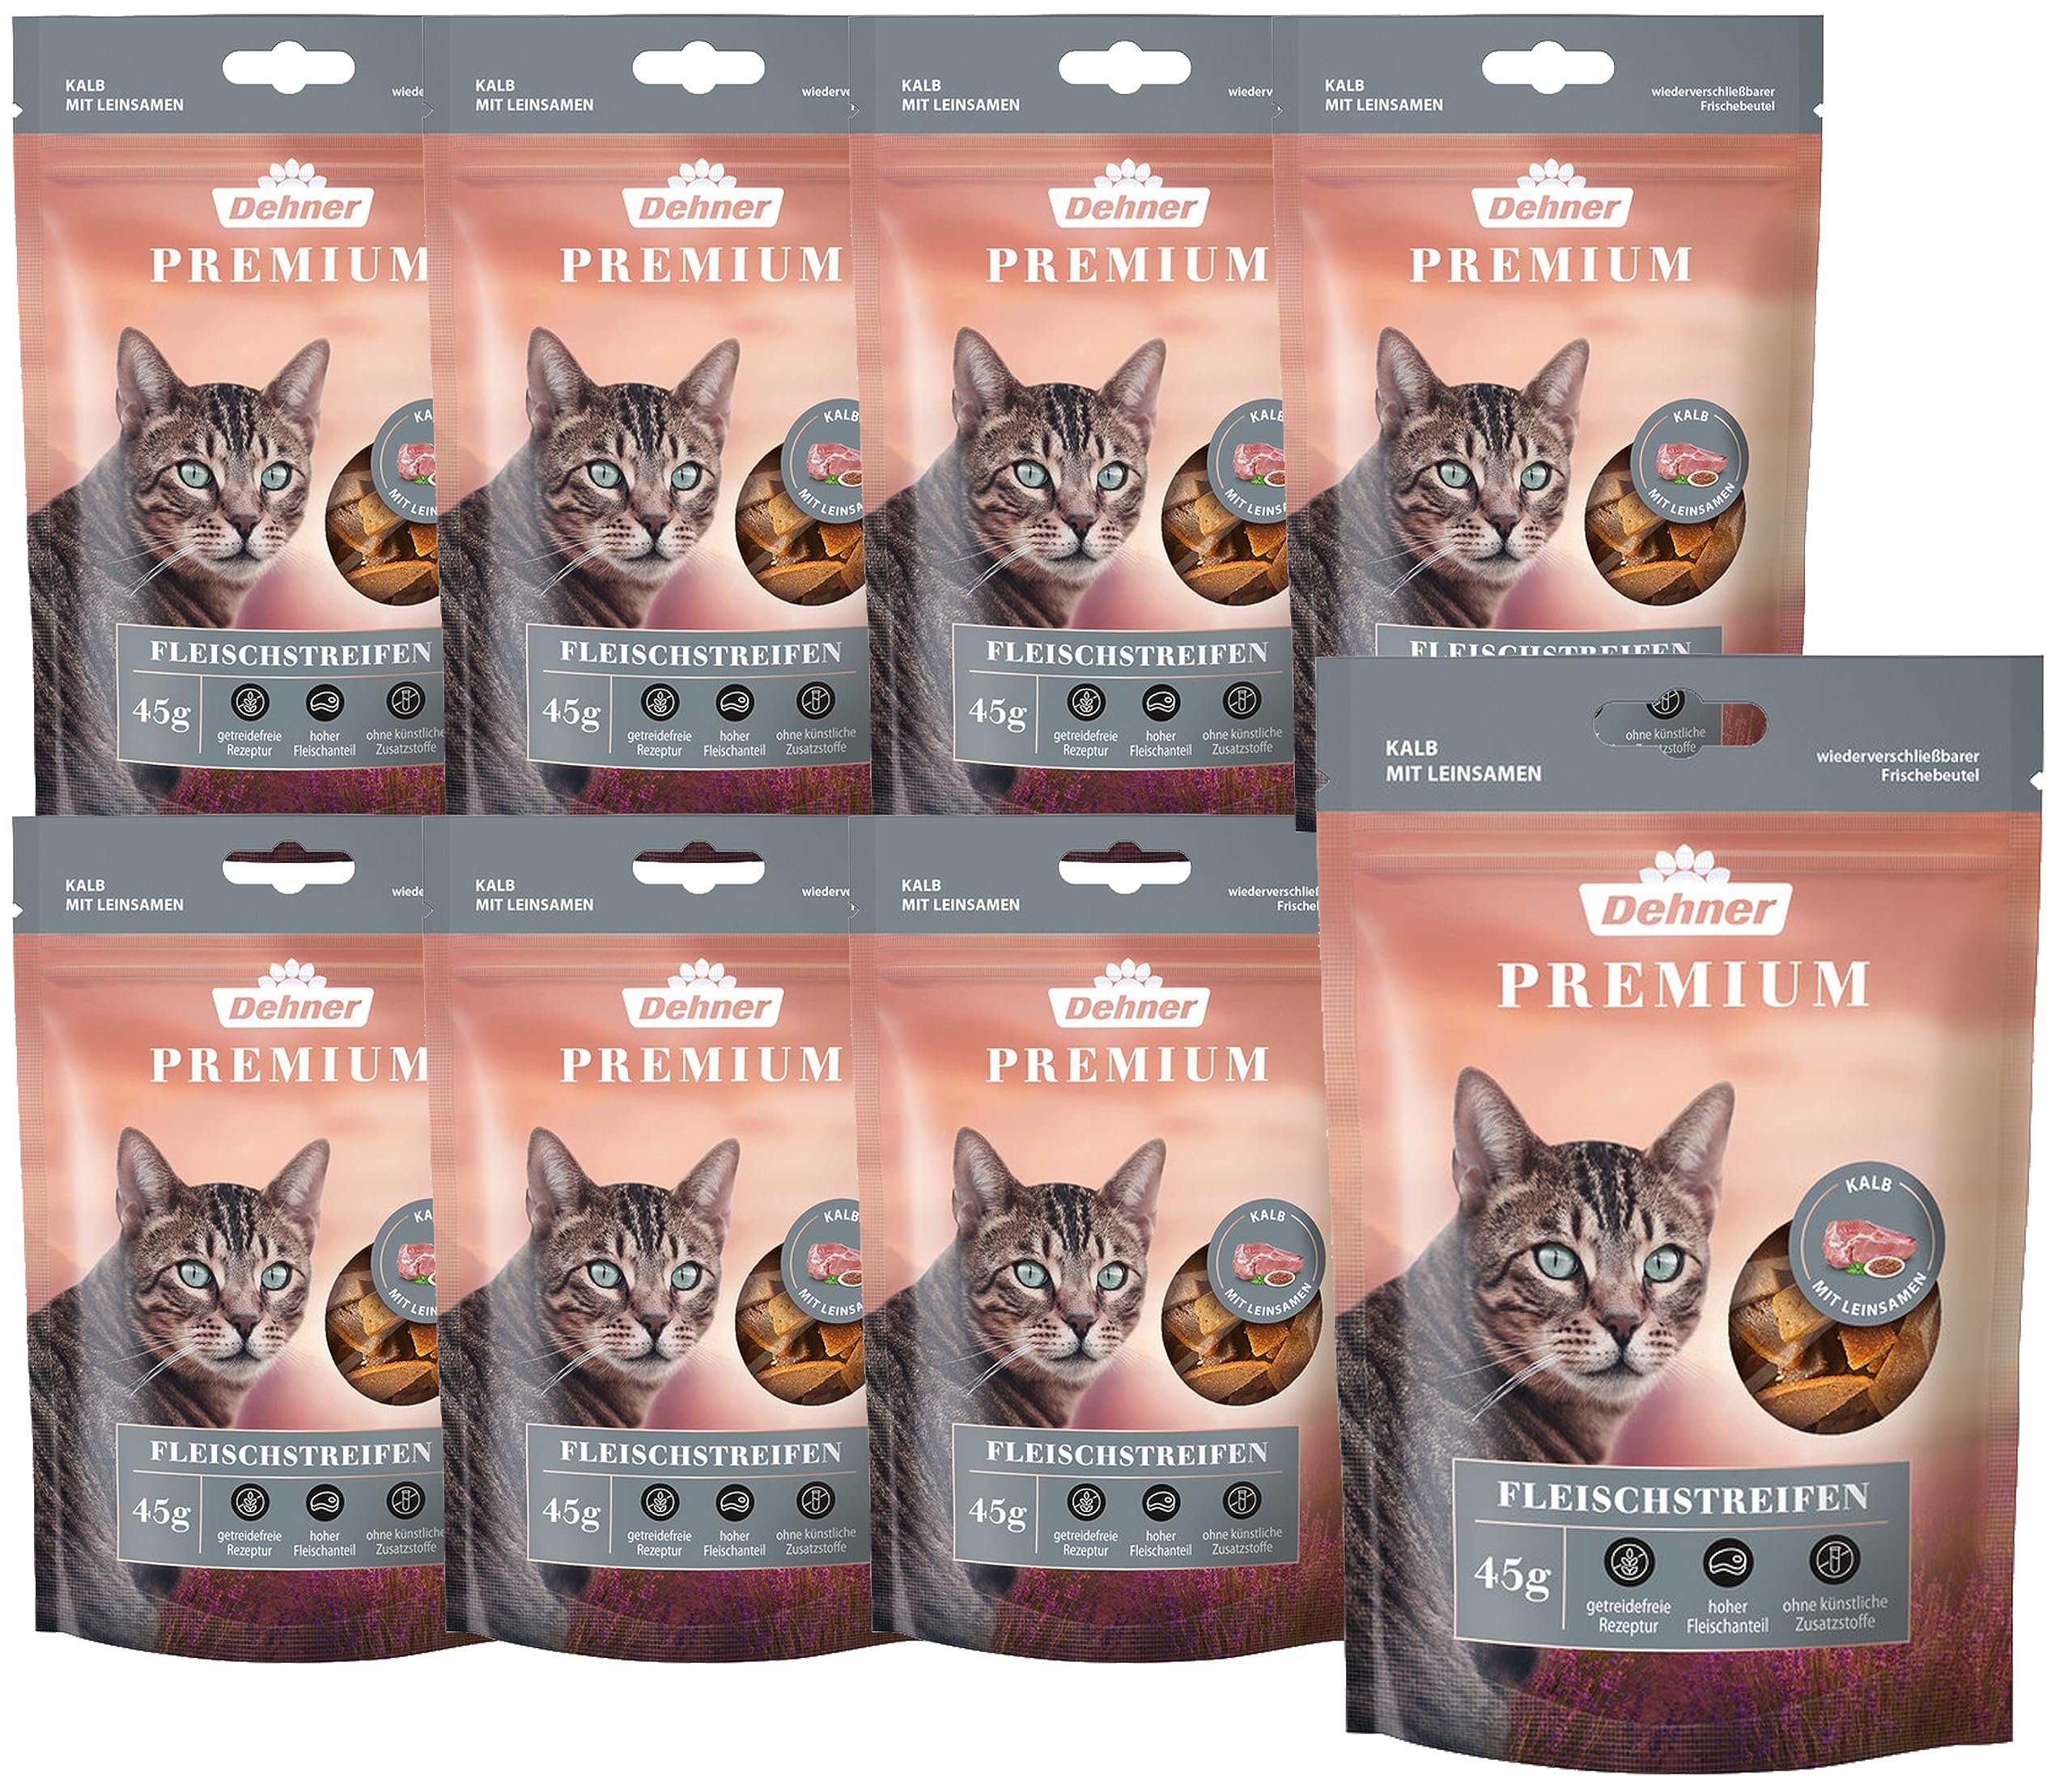 Dehner Premium Katzensnack, Kalbfleischstreifen, 8 x 45 g (360 g)